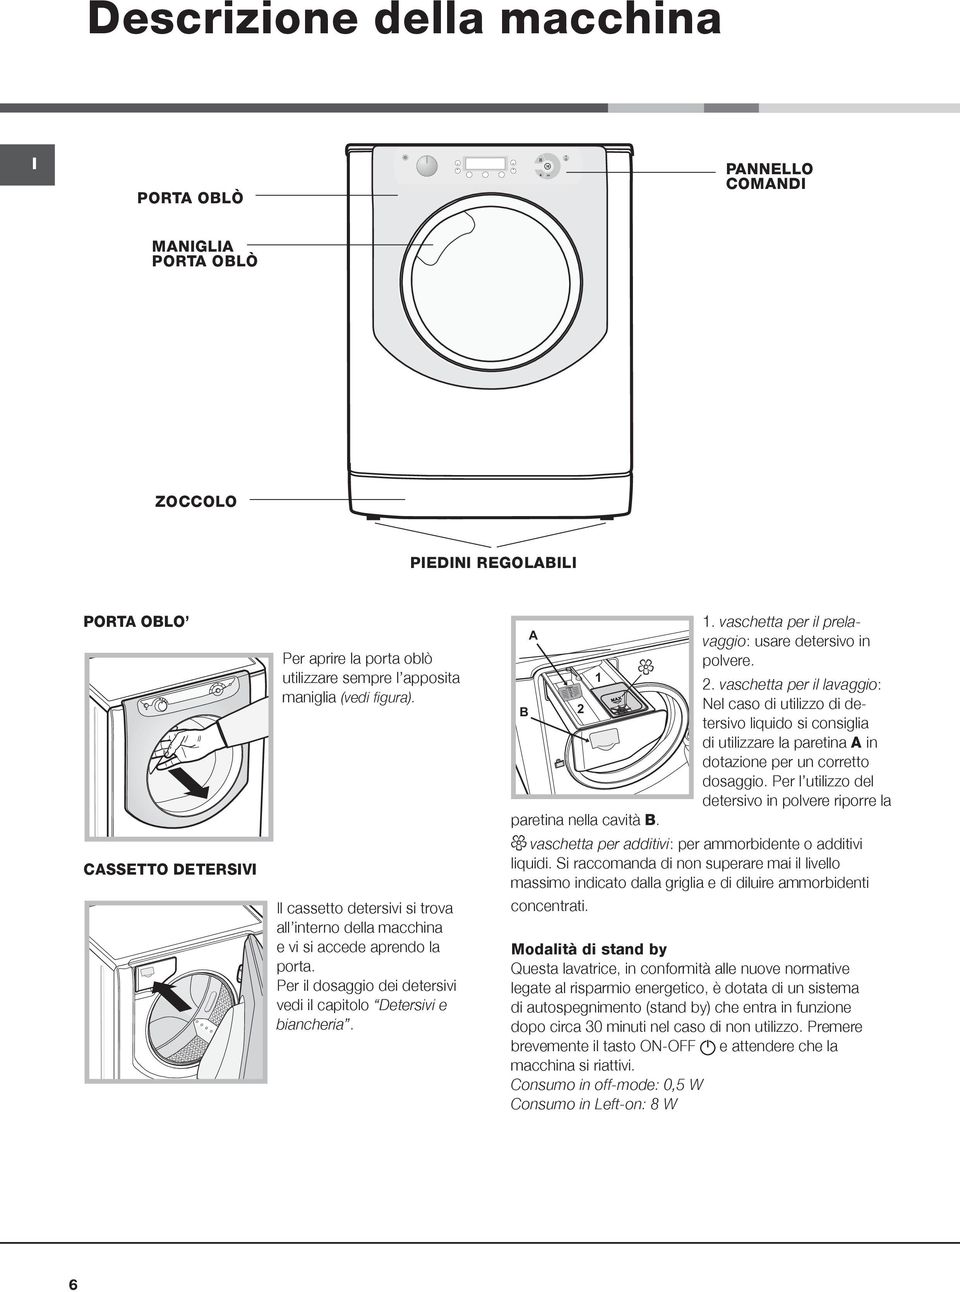 B A 2 paretina nella cavità B. 1. vaschetta per il prelavaggio: usare detersivo in polvere. 2. vaschetta per il lavaggio: Nel caso di utilizzo di detersivo liquido si consiglia di utilizzare la paretina A in dotazione per un corretto dosaggio.